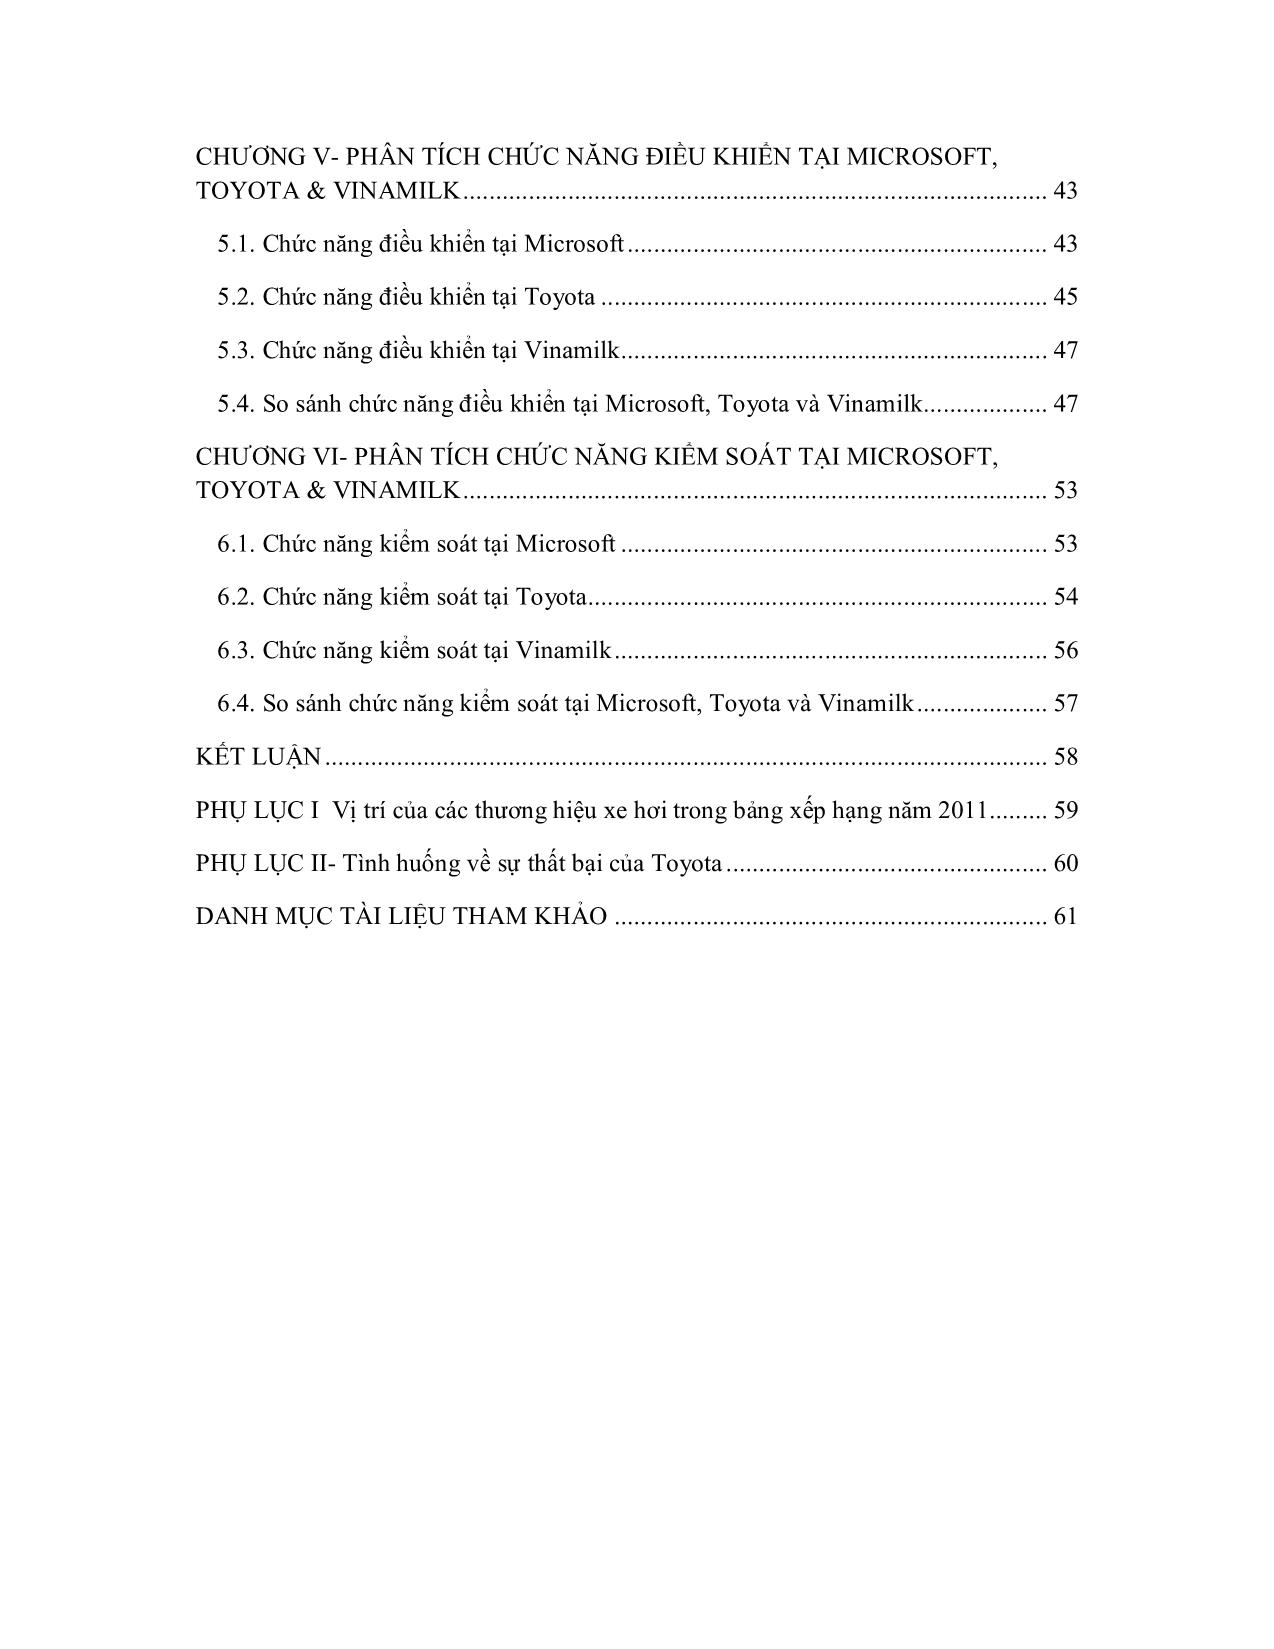 Tiểu luận Phân tích các chức năng quản trị tại Microsoft, Toyota và Vinamilk trang 4